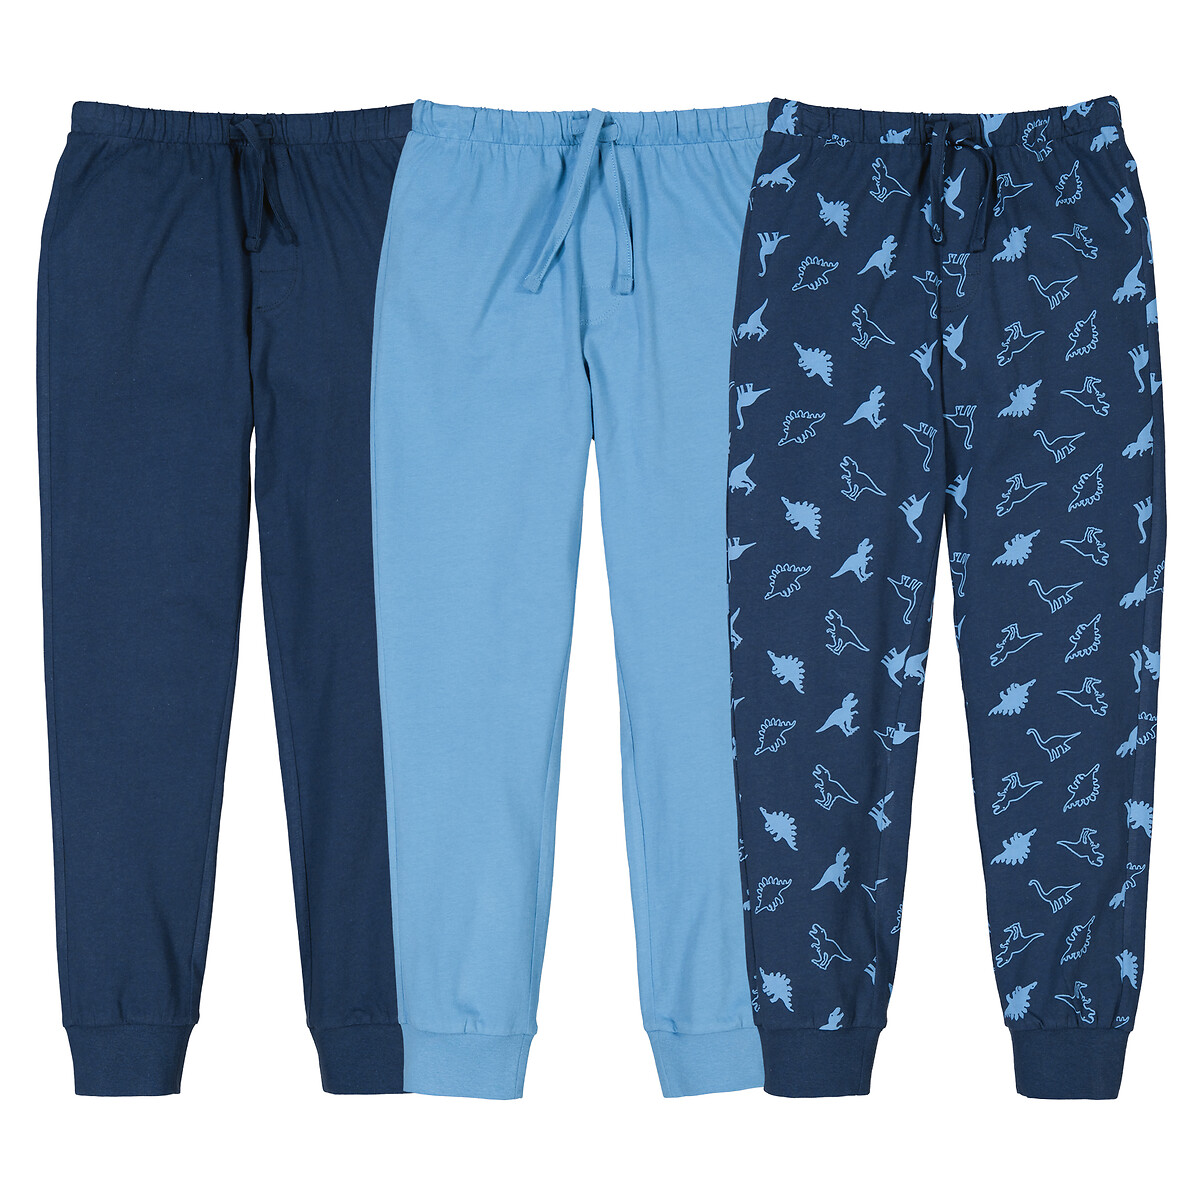 Комплект из трех пижамных брюк La Redoute 3 года - 94 см синий комплект из трех пижамных брюк la redoute 3 года 94 см синий